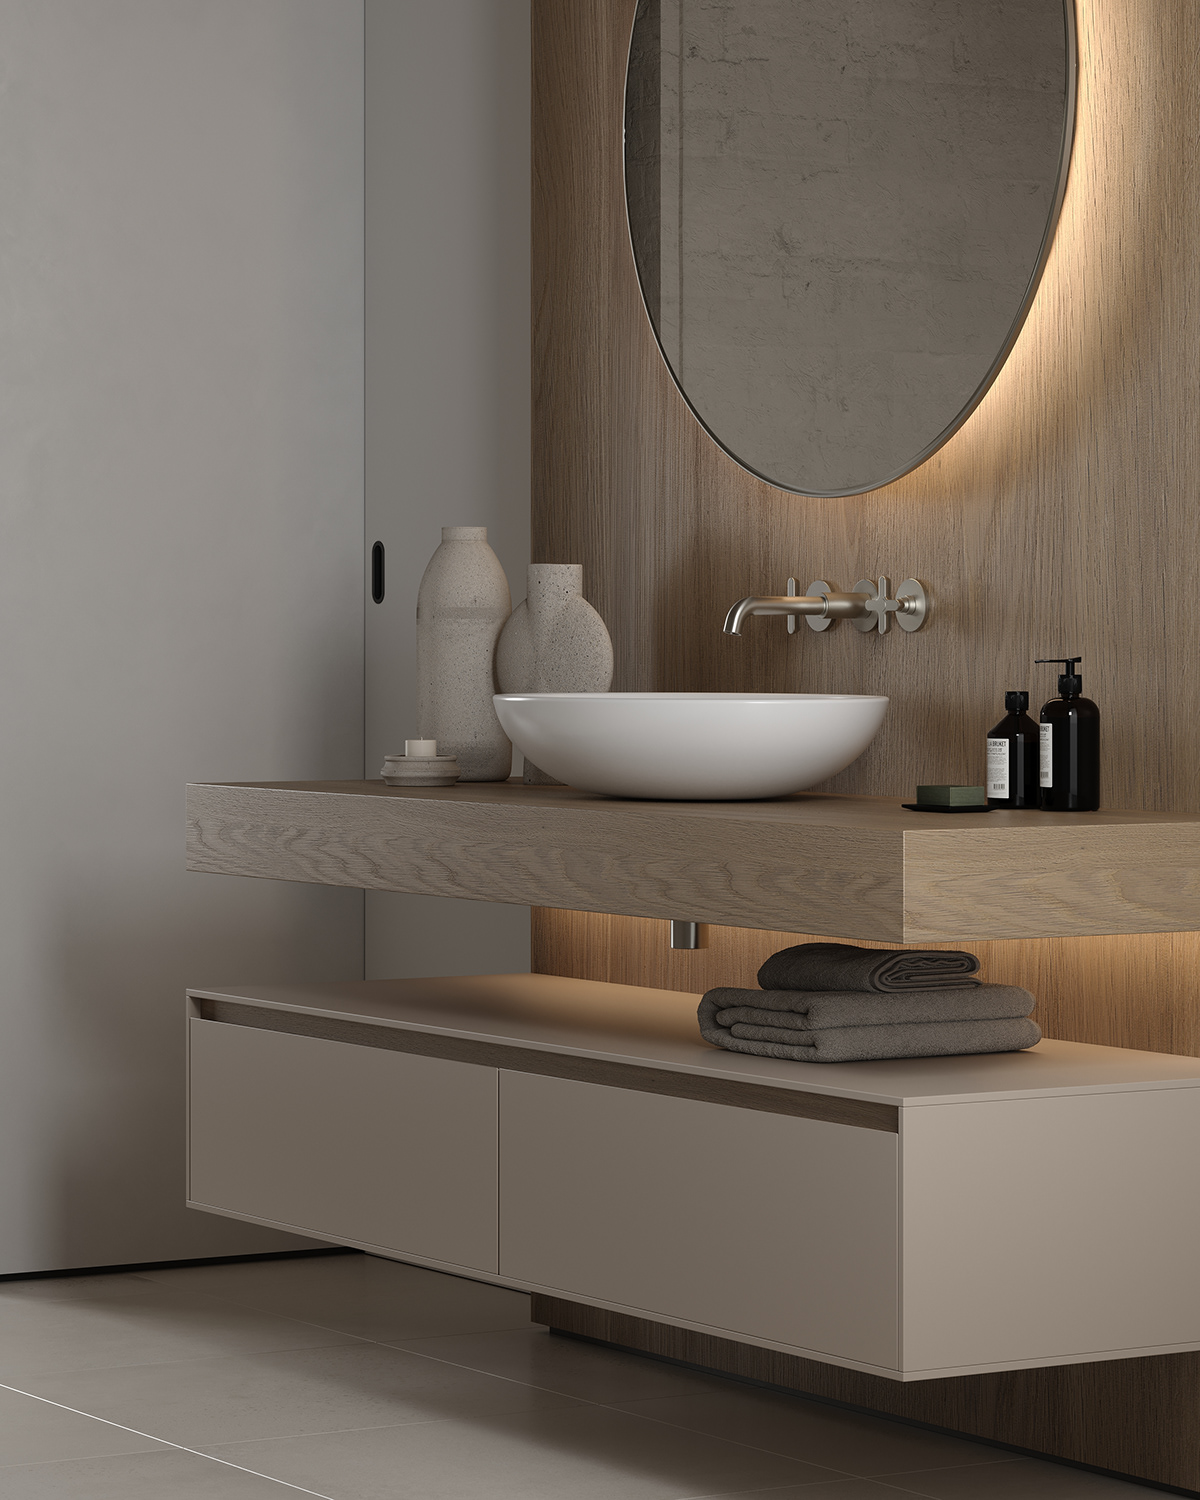 bathroom interior design  Render visualization 3ds max CGI Interior design